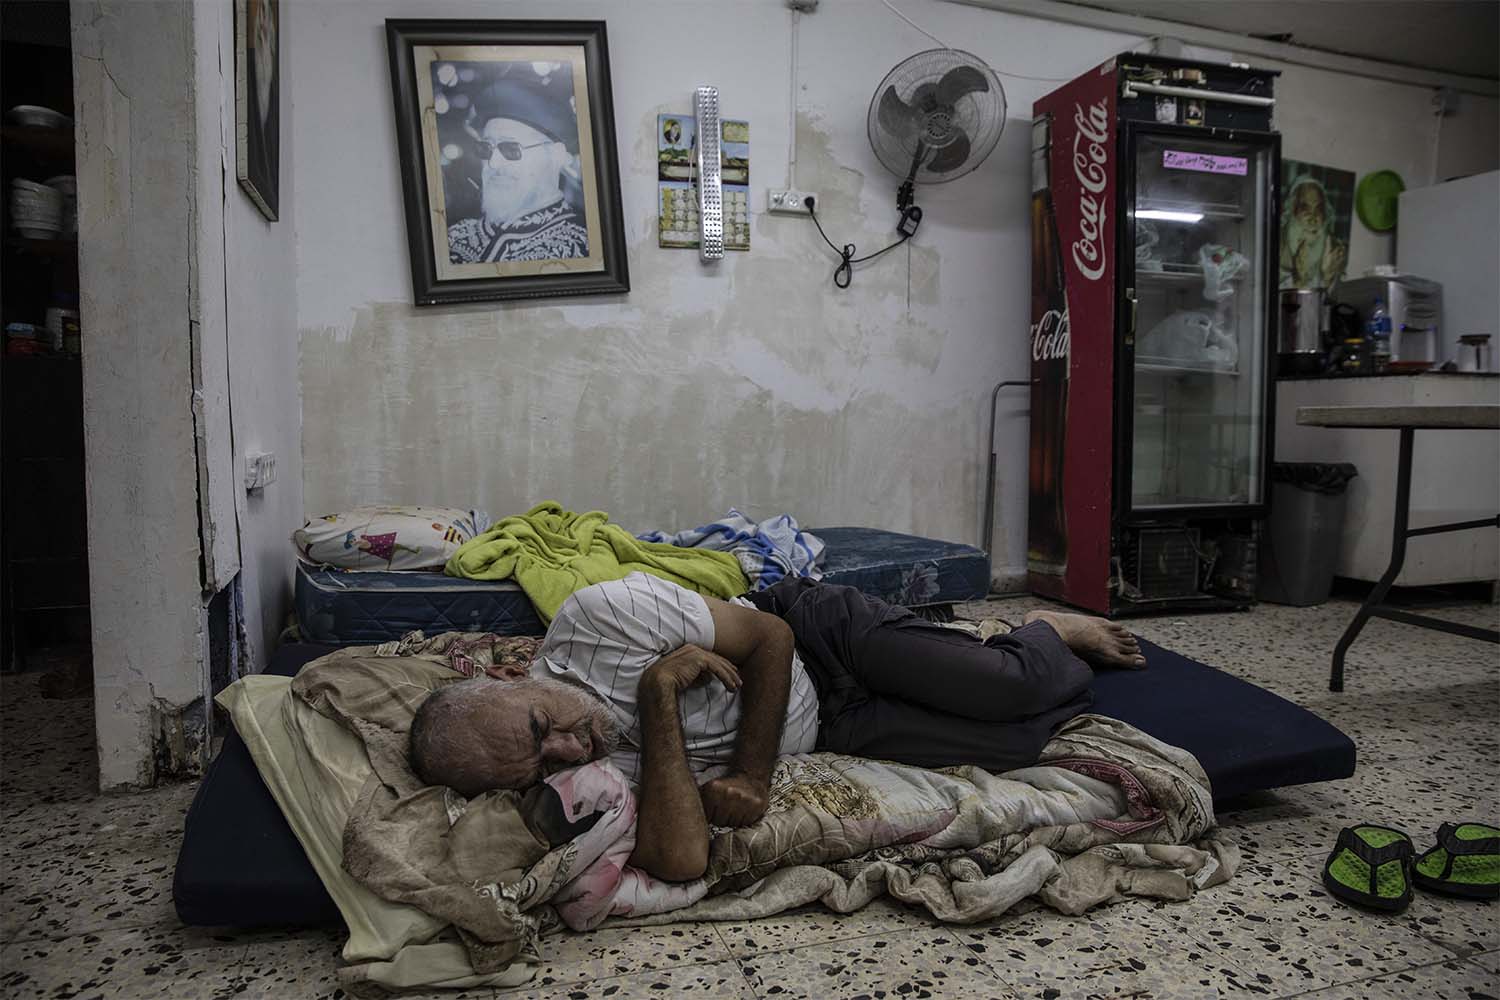 דניאל תורג'מן, בן 60, נח במקלט המשמש גם כבית כנסת סמוך לבניין מגוריו באשדוד. 19 במאי 2021 (צילום: AP Photo/Heidi Levine)